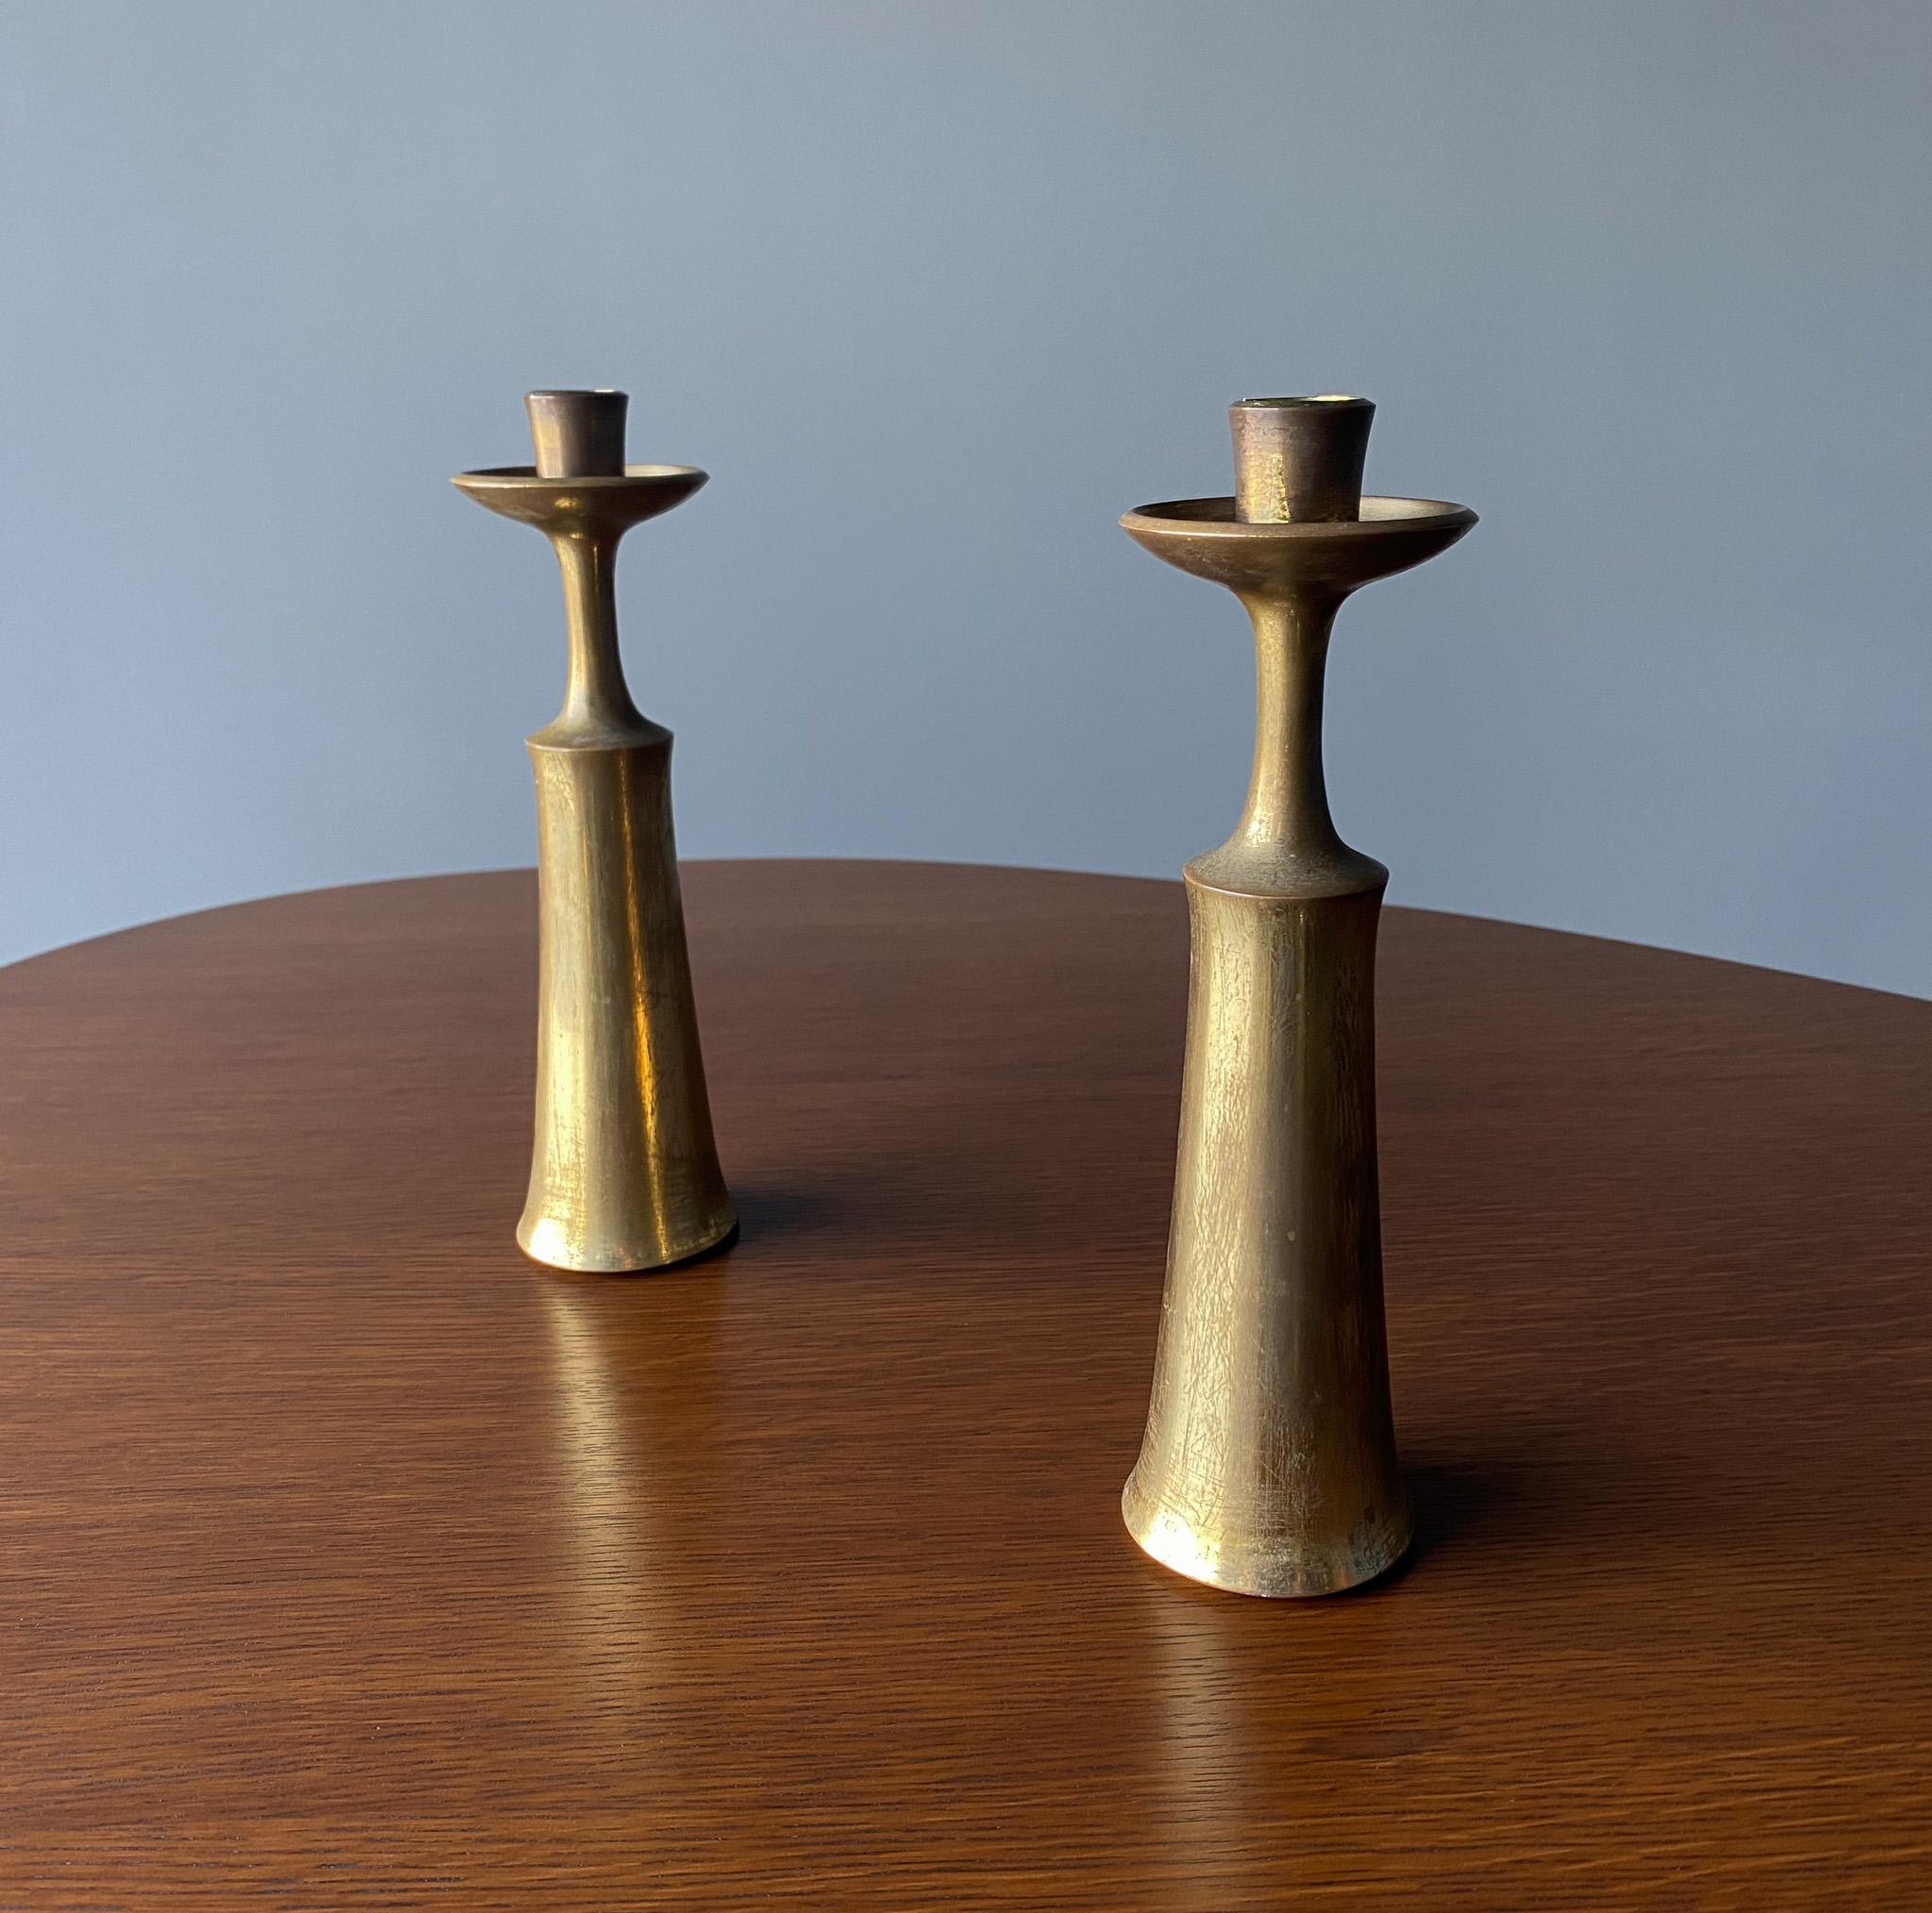 Jens H. Quistgaard Brass Candlesticks for Dansk Designs, Denmark, 1960s For Sale 5